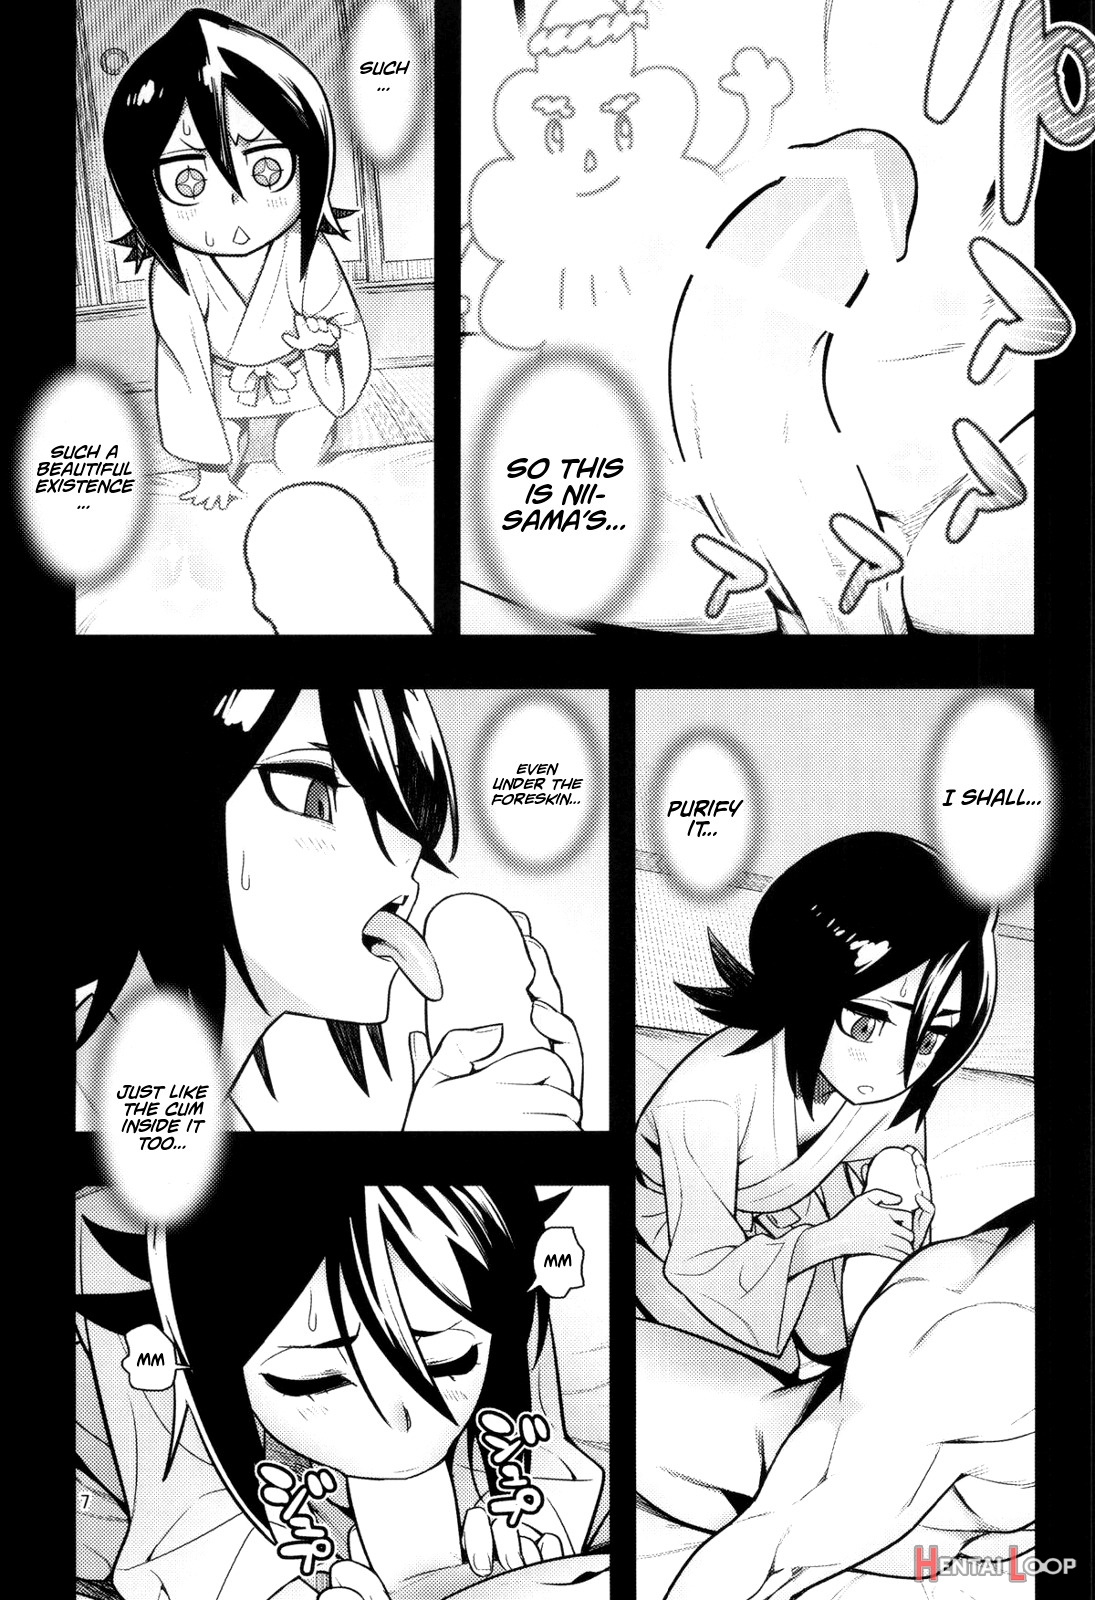 Rukias Room page 7